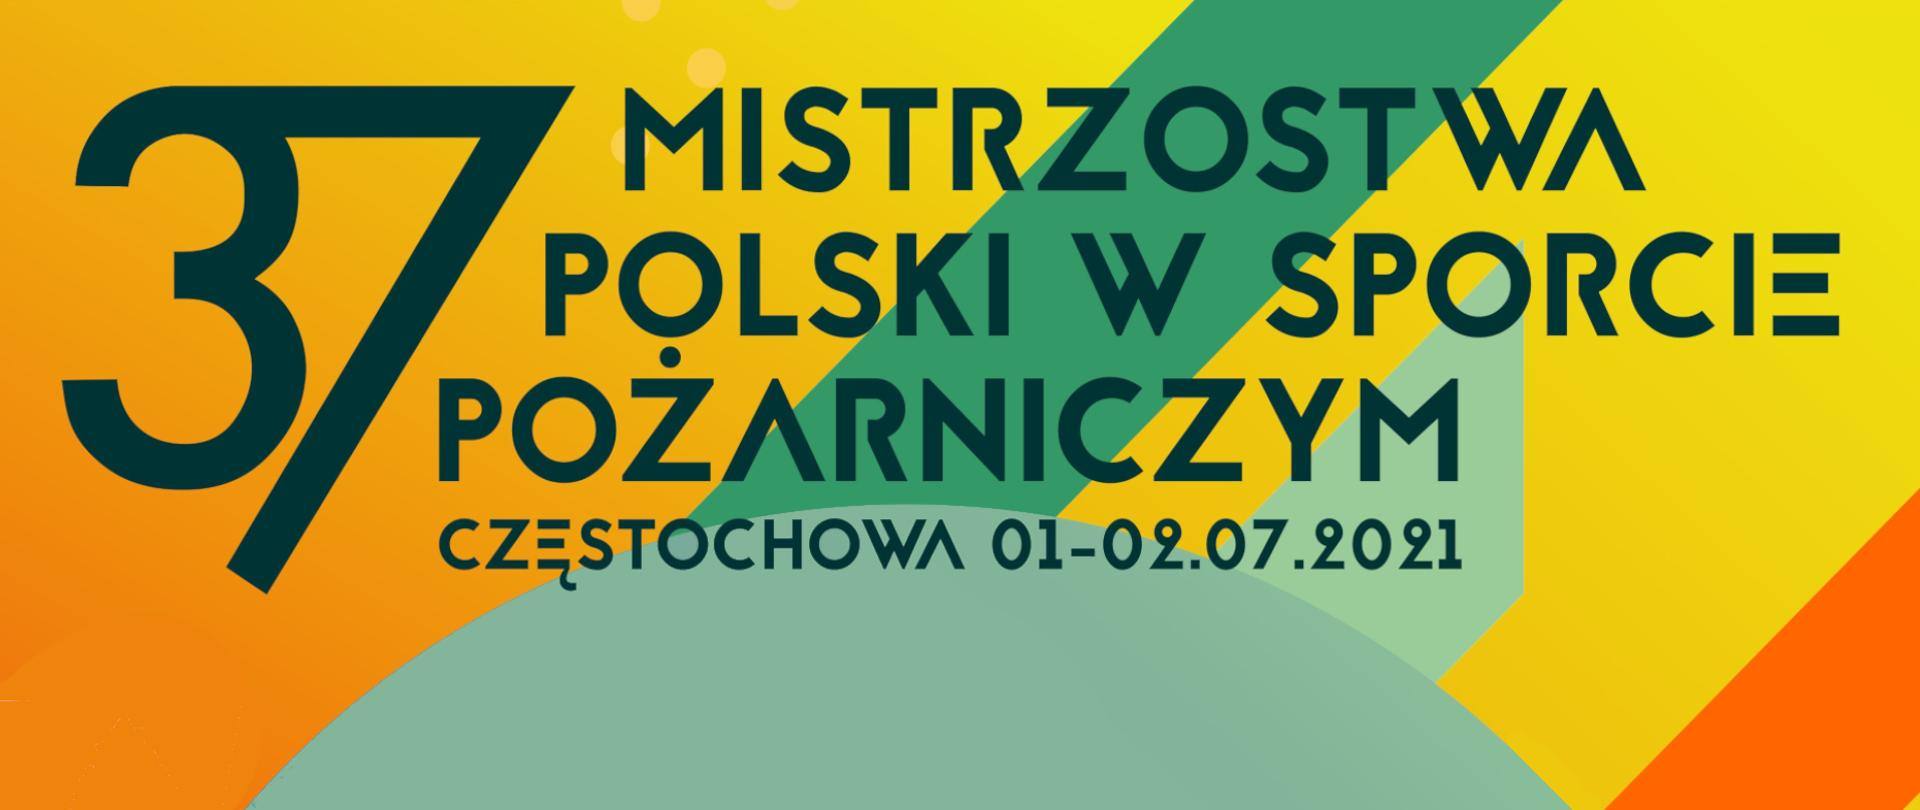 Mistrzostwa Polski w Sporcie Pożarniczym Częstochowa 01-02.07.2021 